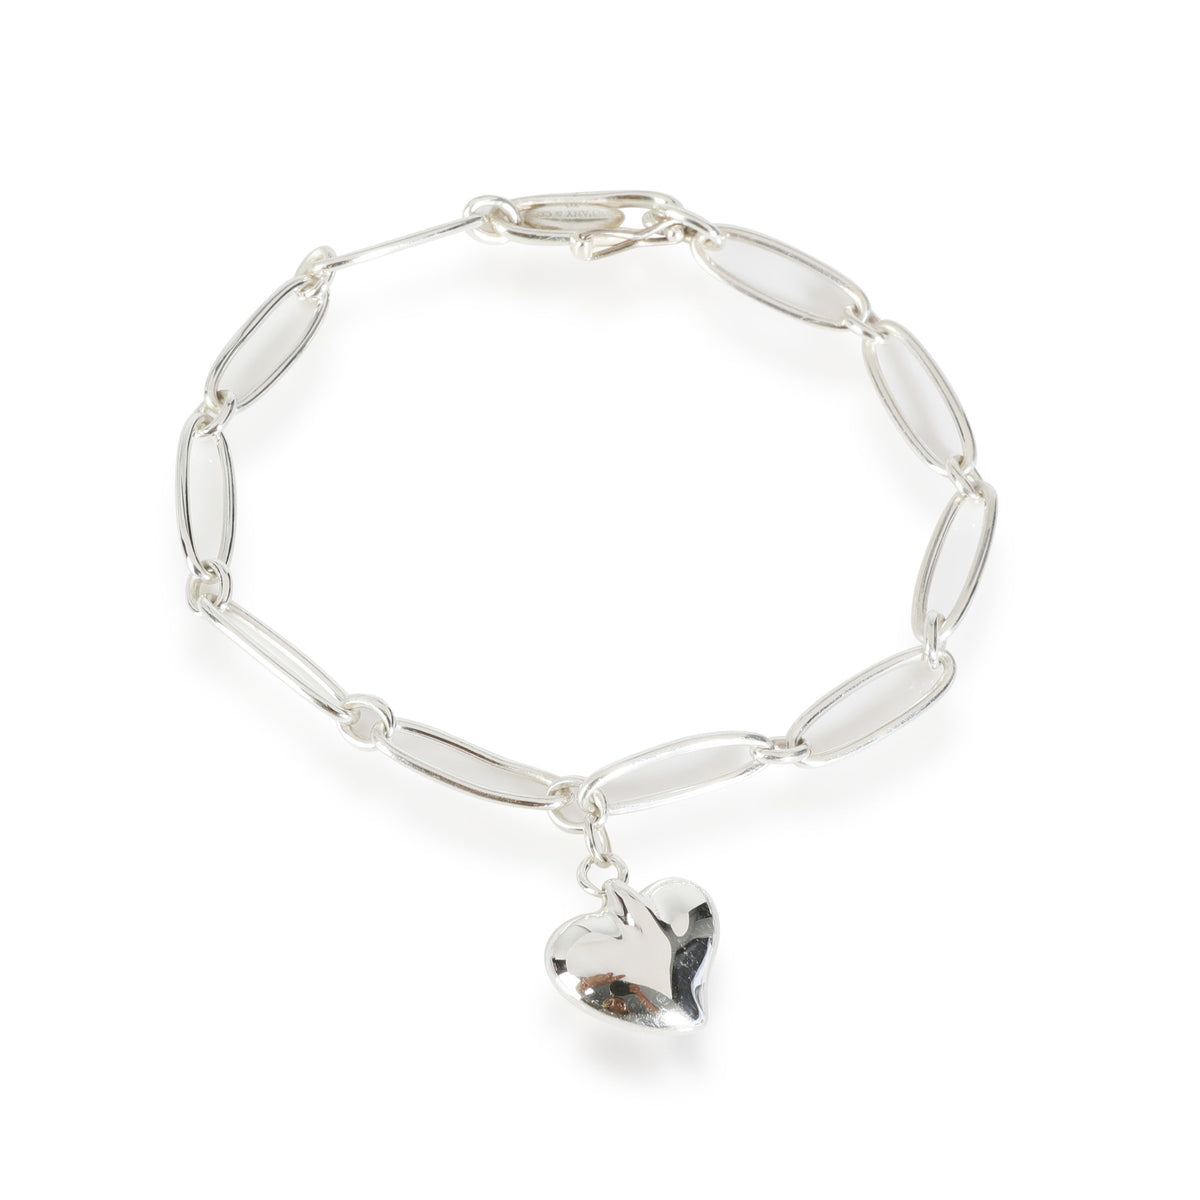 Tiffany & Co. Elsa Peretti Full Heart Bracelet in  Sterling Silver